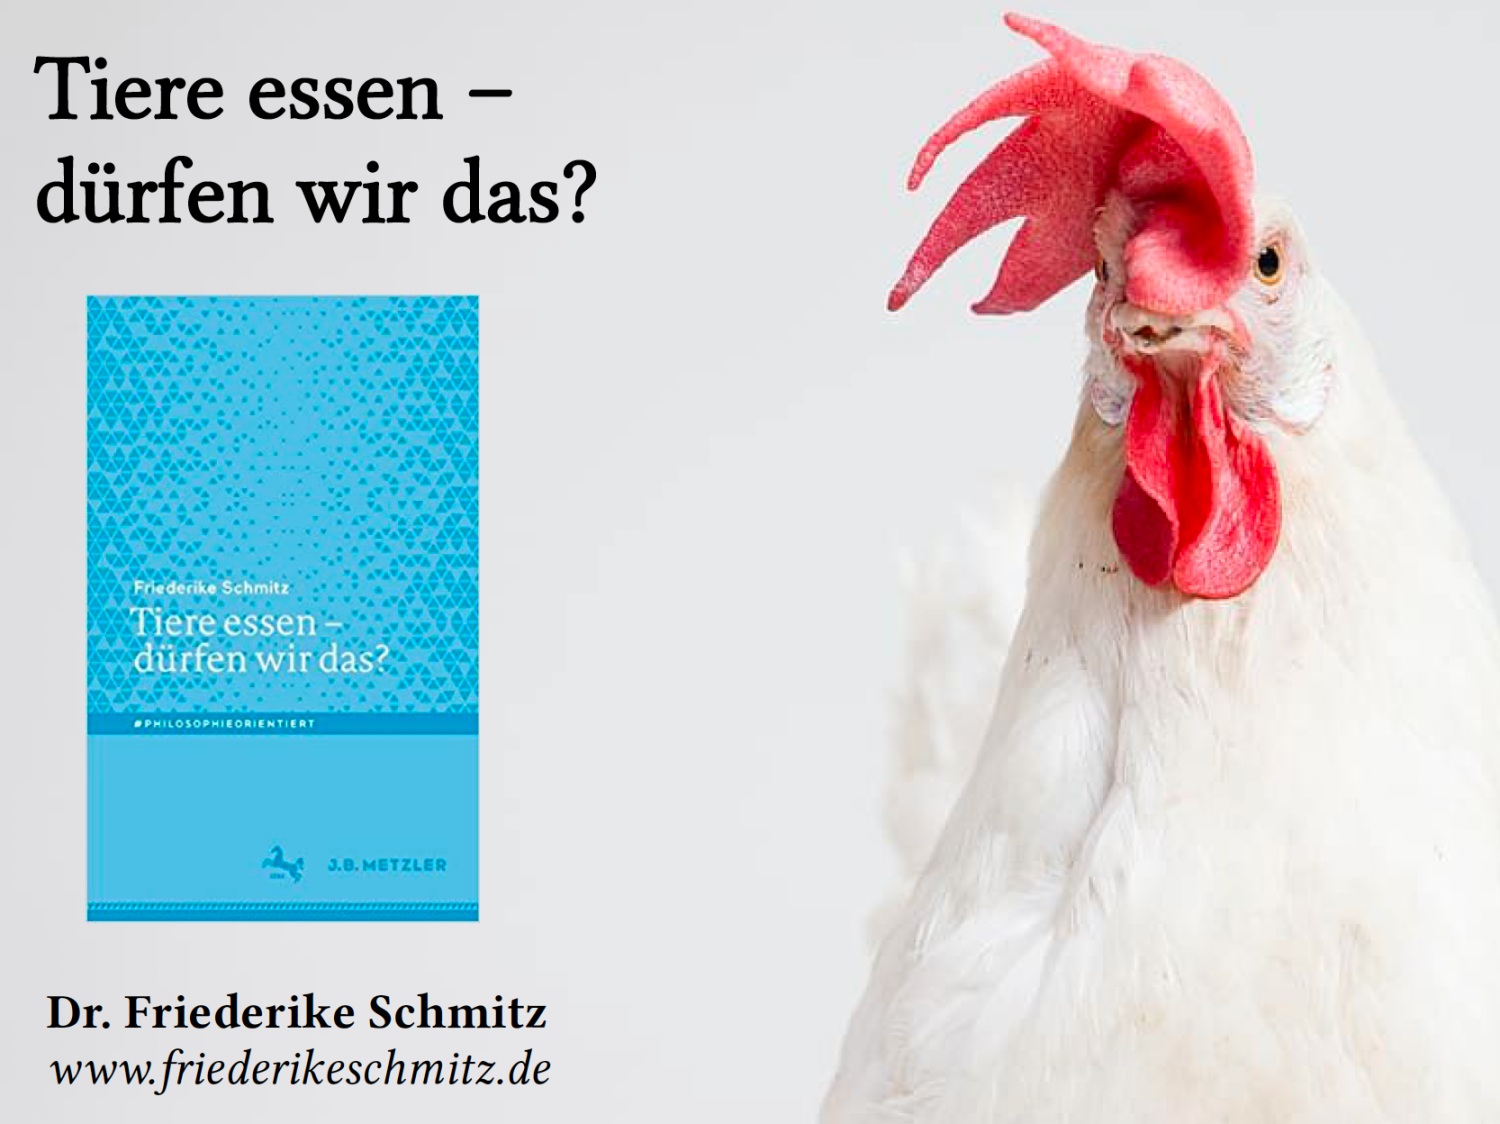 Foto eines Hahns neben dem Bild einer Broschüre mit dem Titel Tiere essen - dürfen wir das?